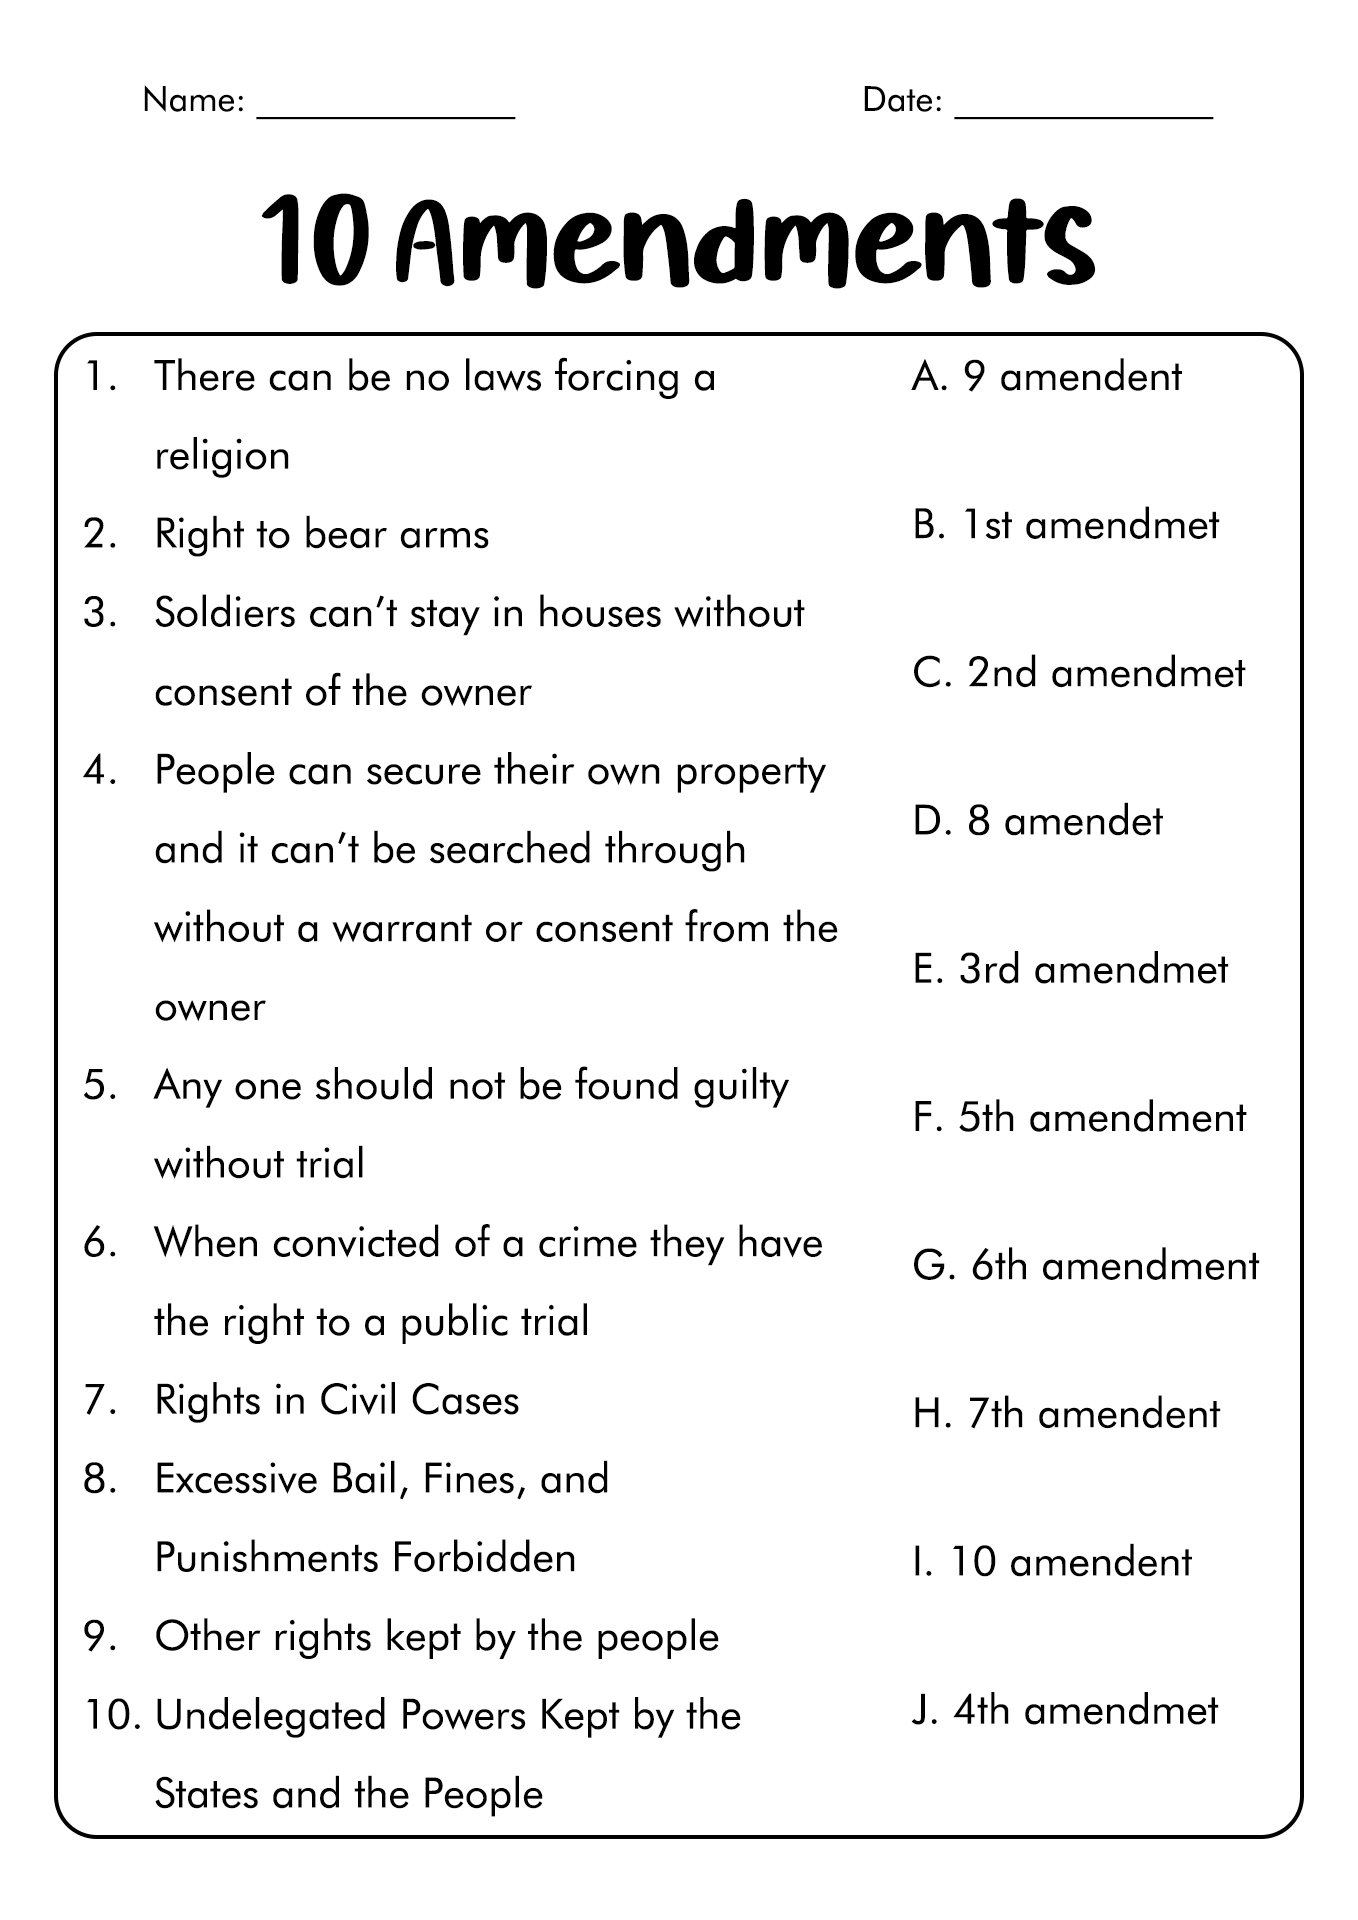 Bill of Rights Ten Amendments Image